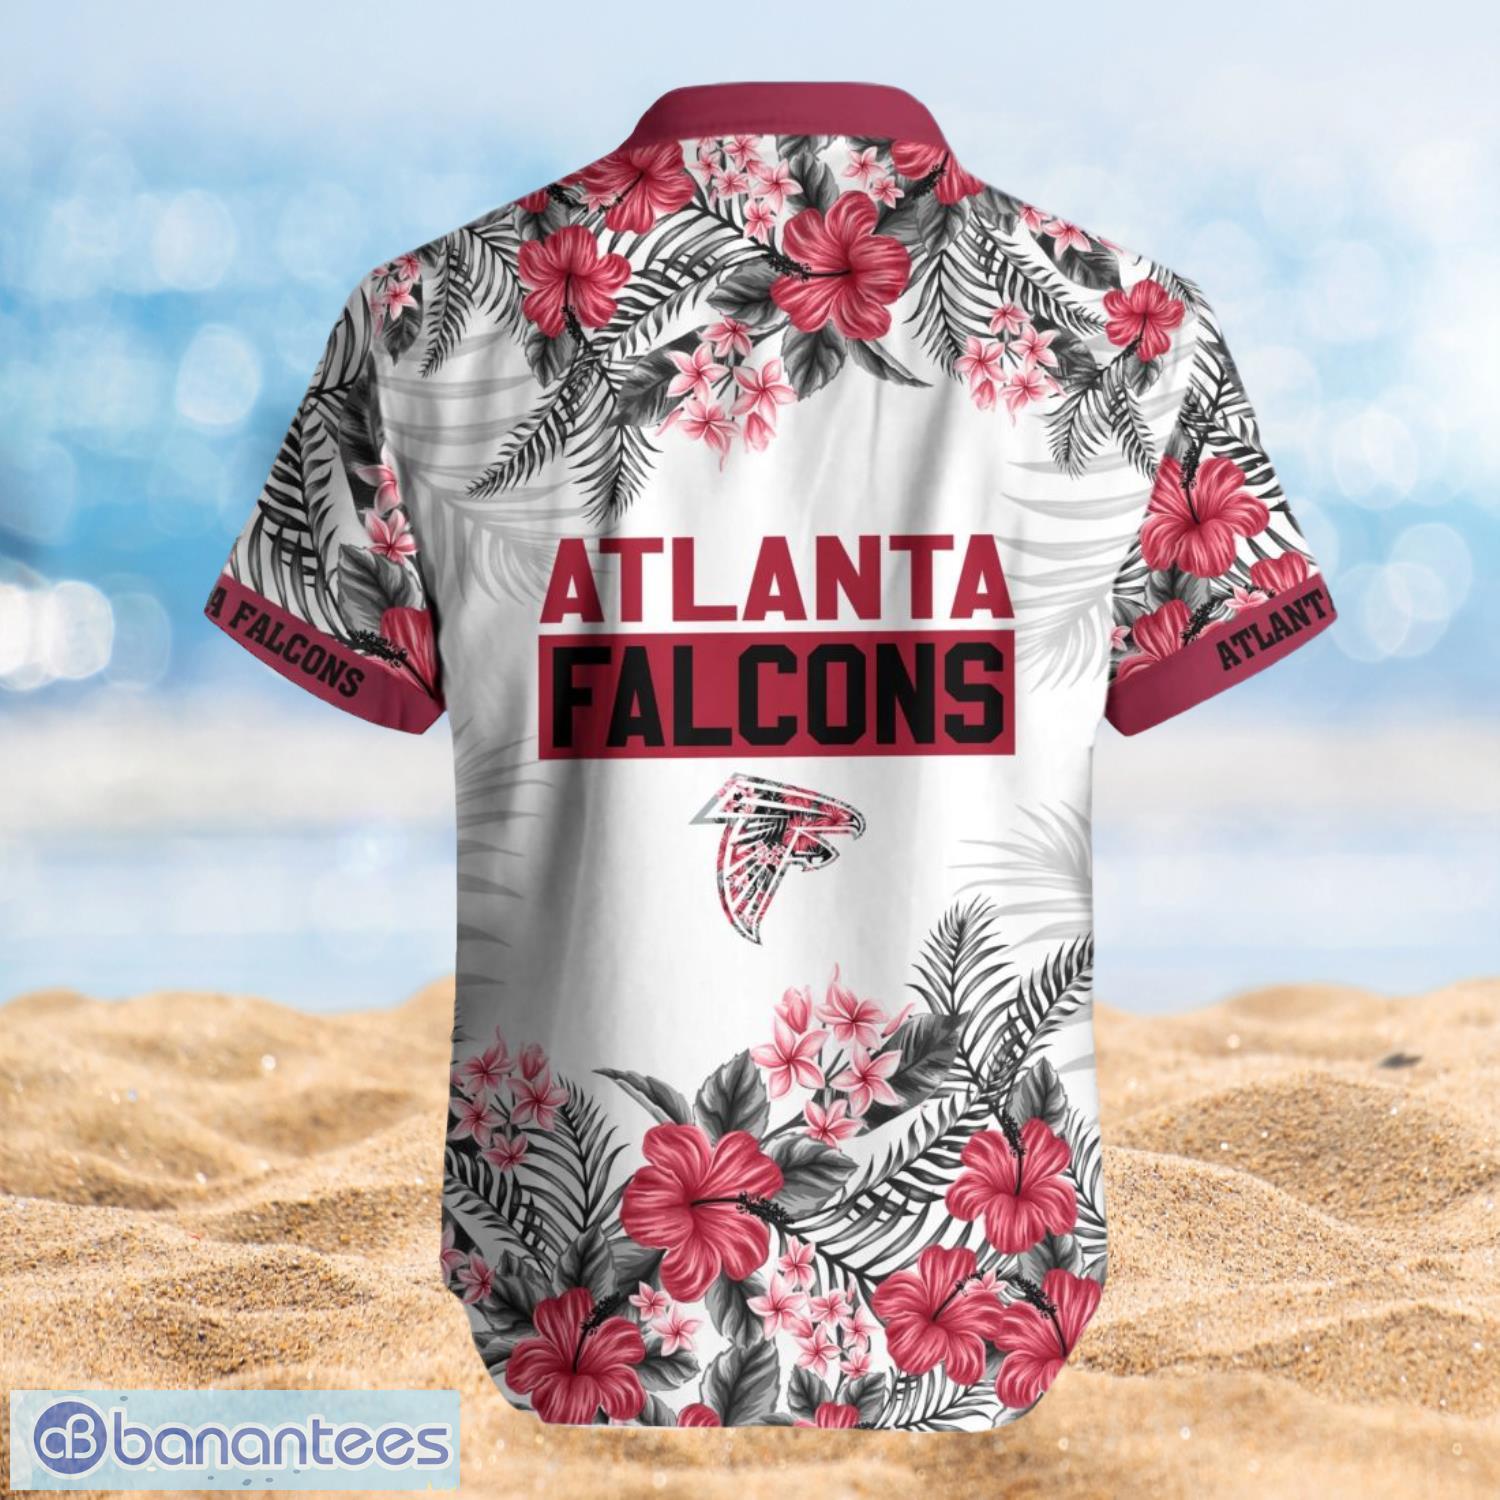 Atlanta Falcons Summer Beach Shirt and Shorts Full Over Print Product Photo 2